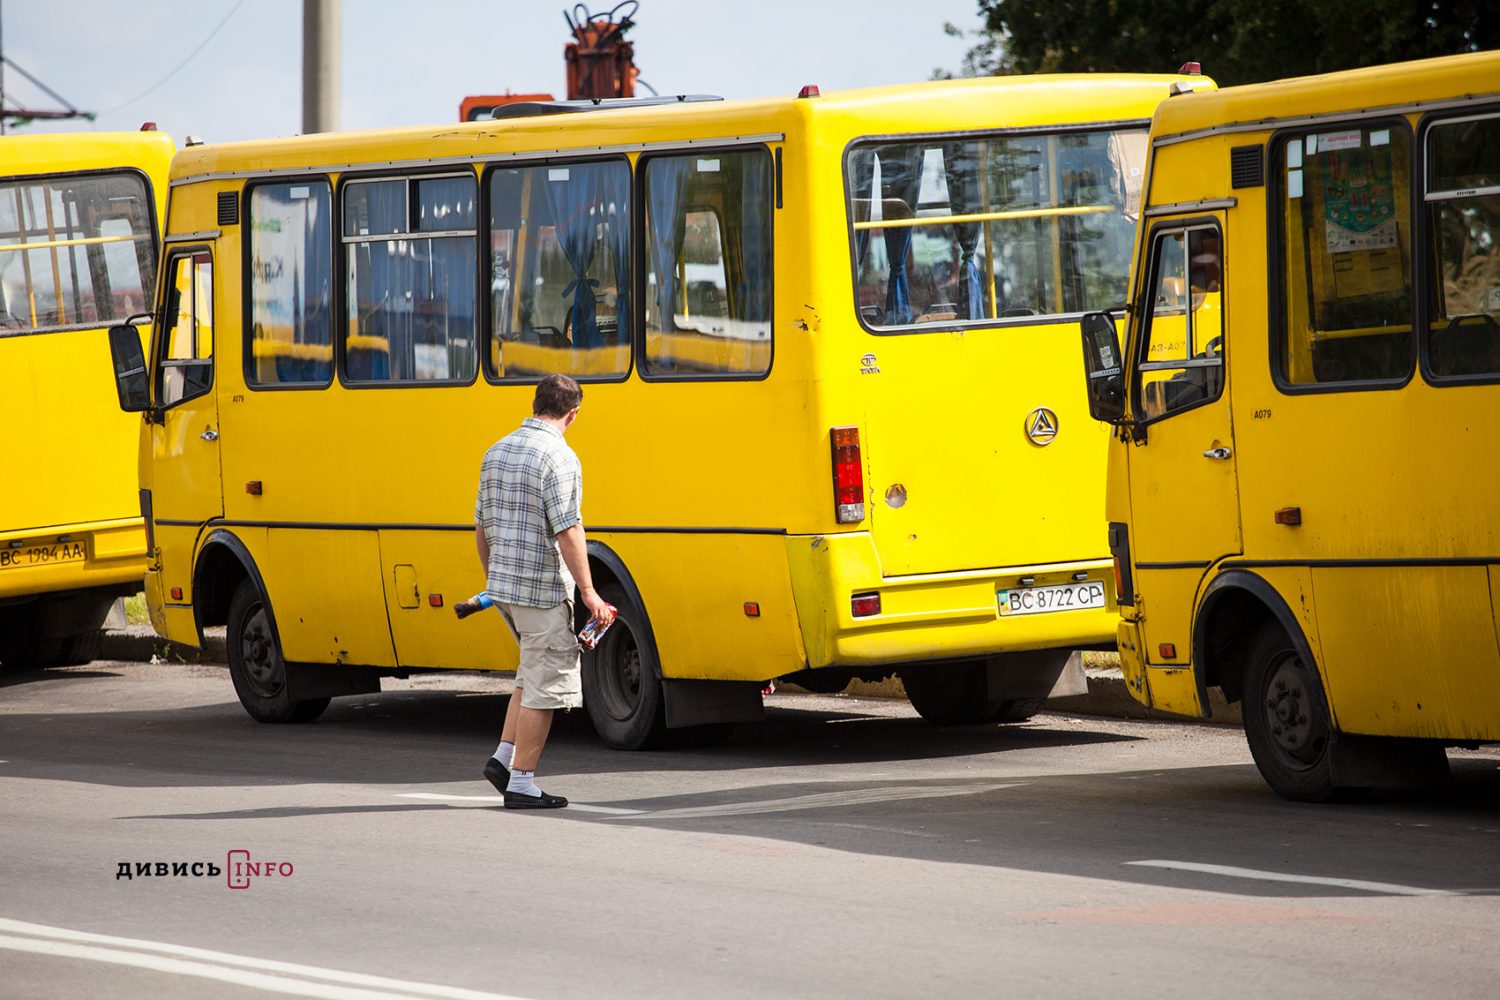 Strajk-Avtobus-16 (3)